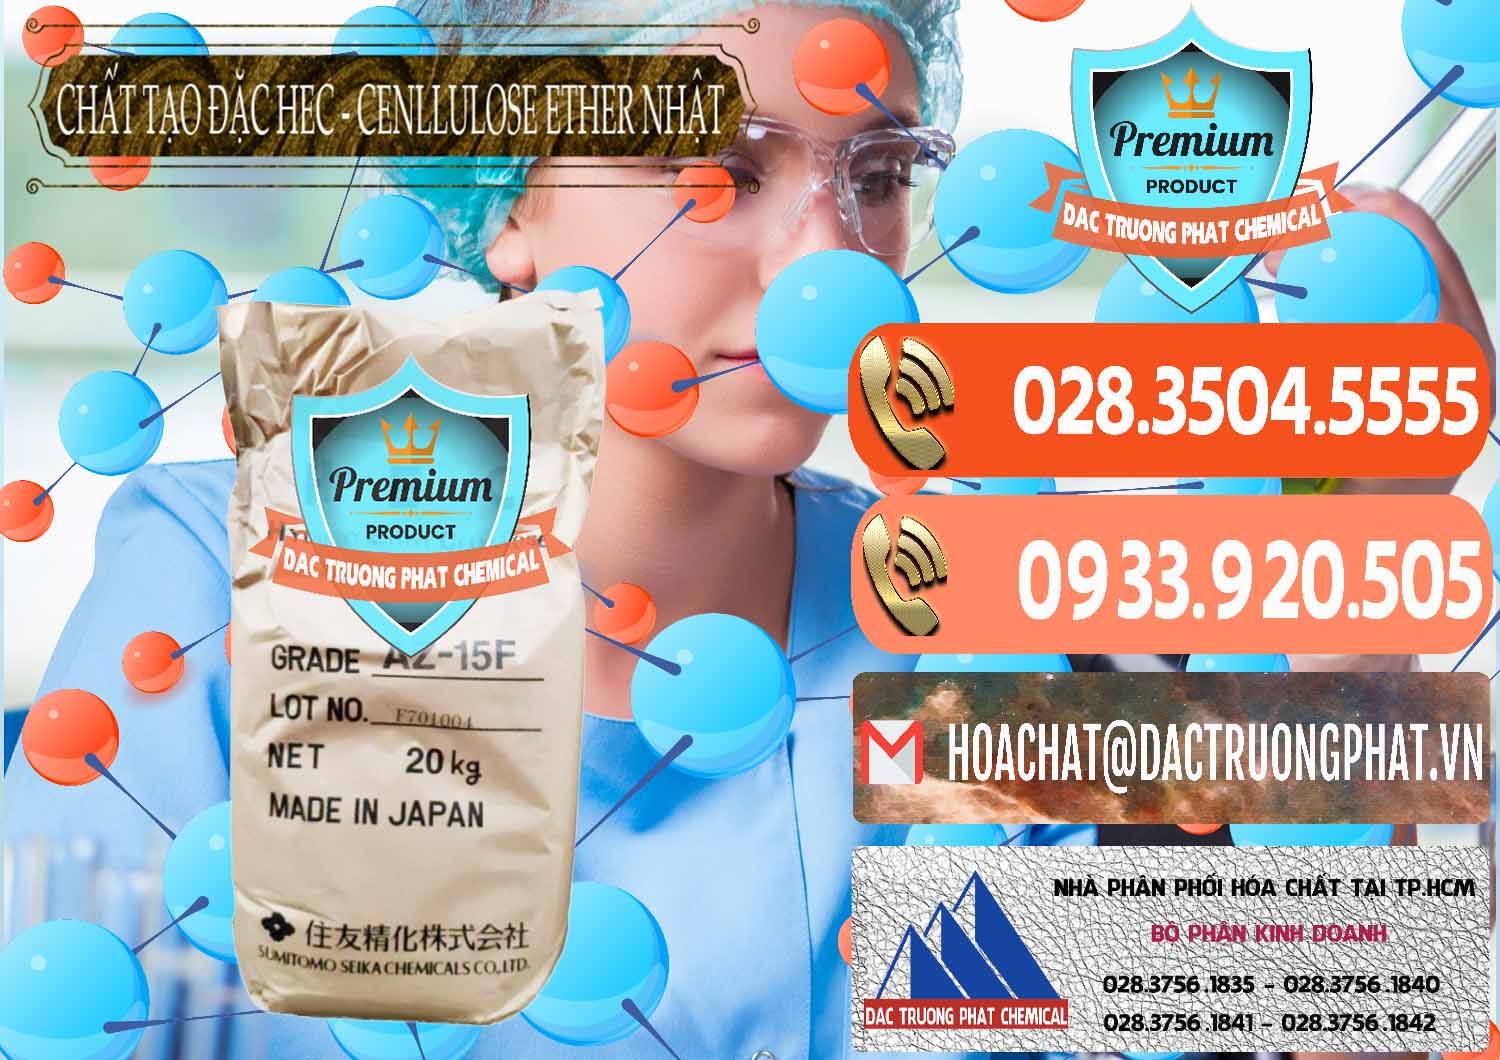 Công ty bán _ cung cấp Chất Tạo Đặc Hec Mecellose – Cenllulose Ether Nhật Bản Japan - 0367 - Công ty cung cấp _ bán hóa chất tại TP.HCM - hoachatmientay.com